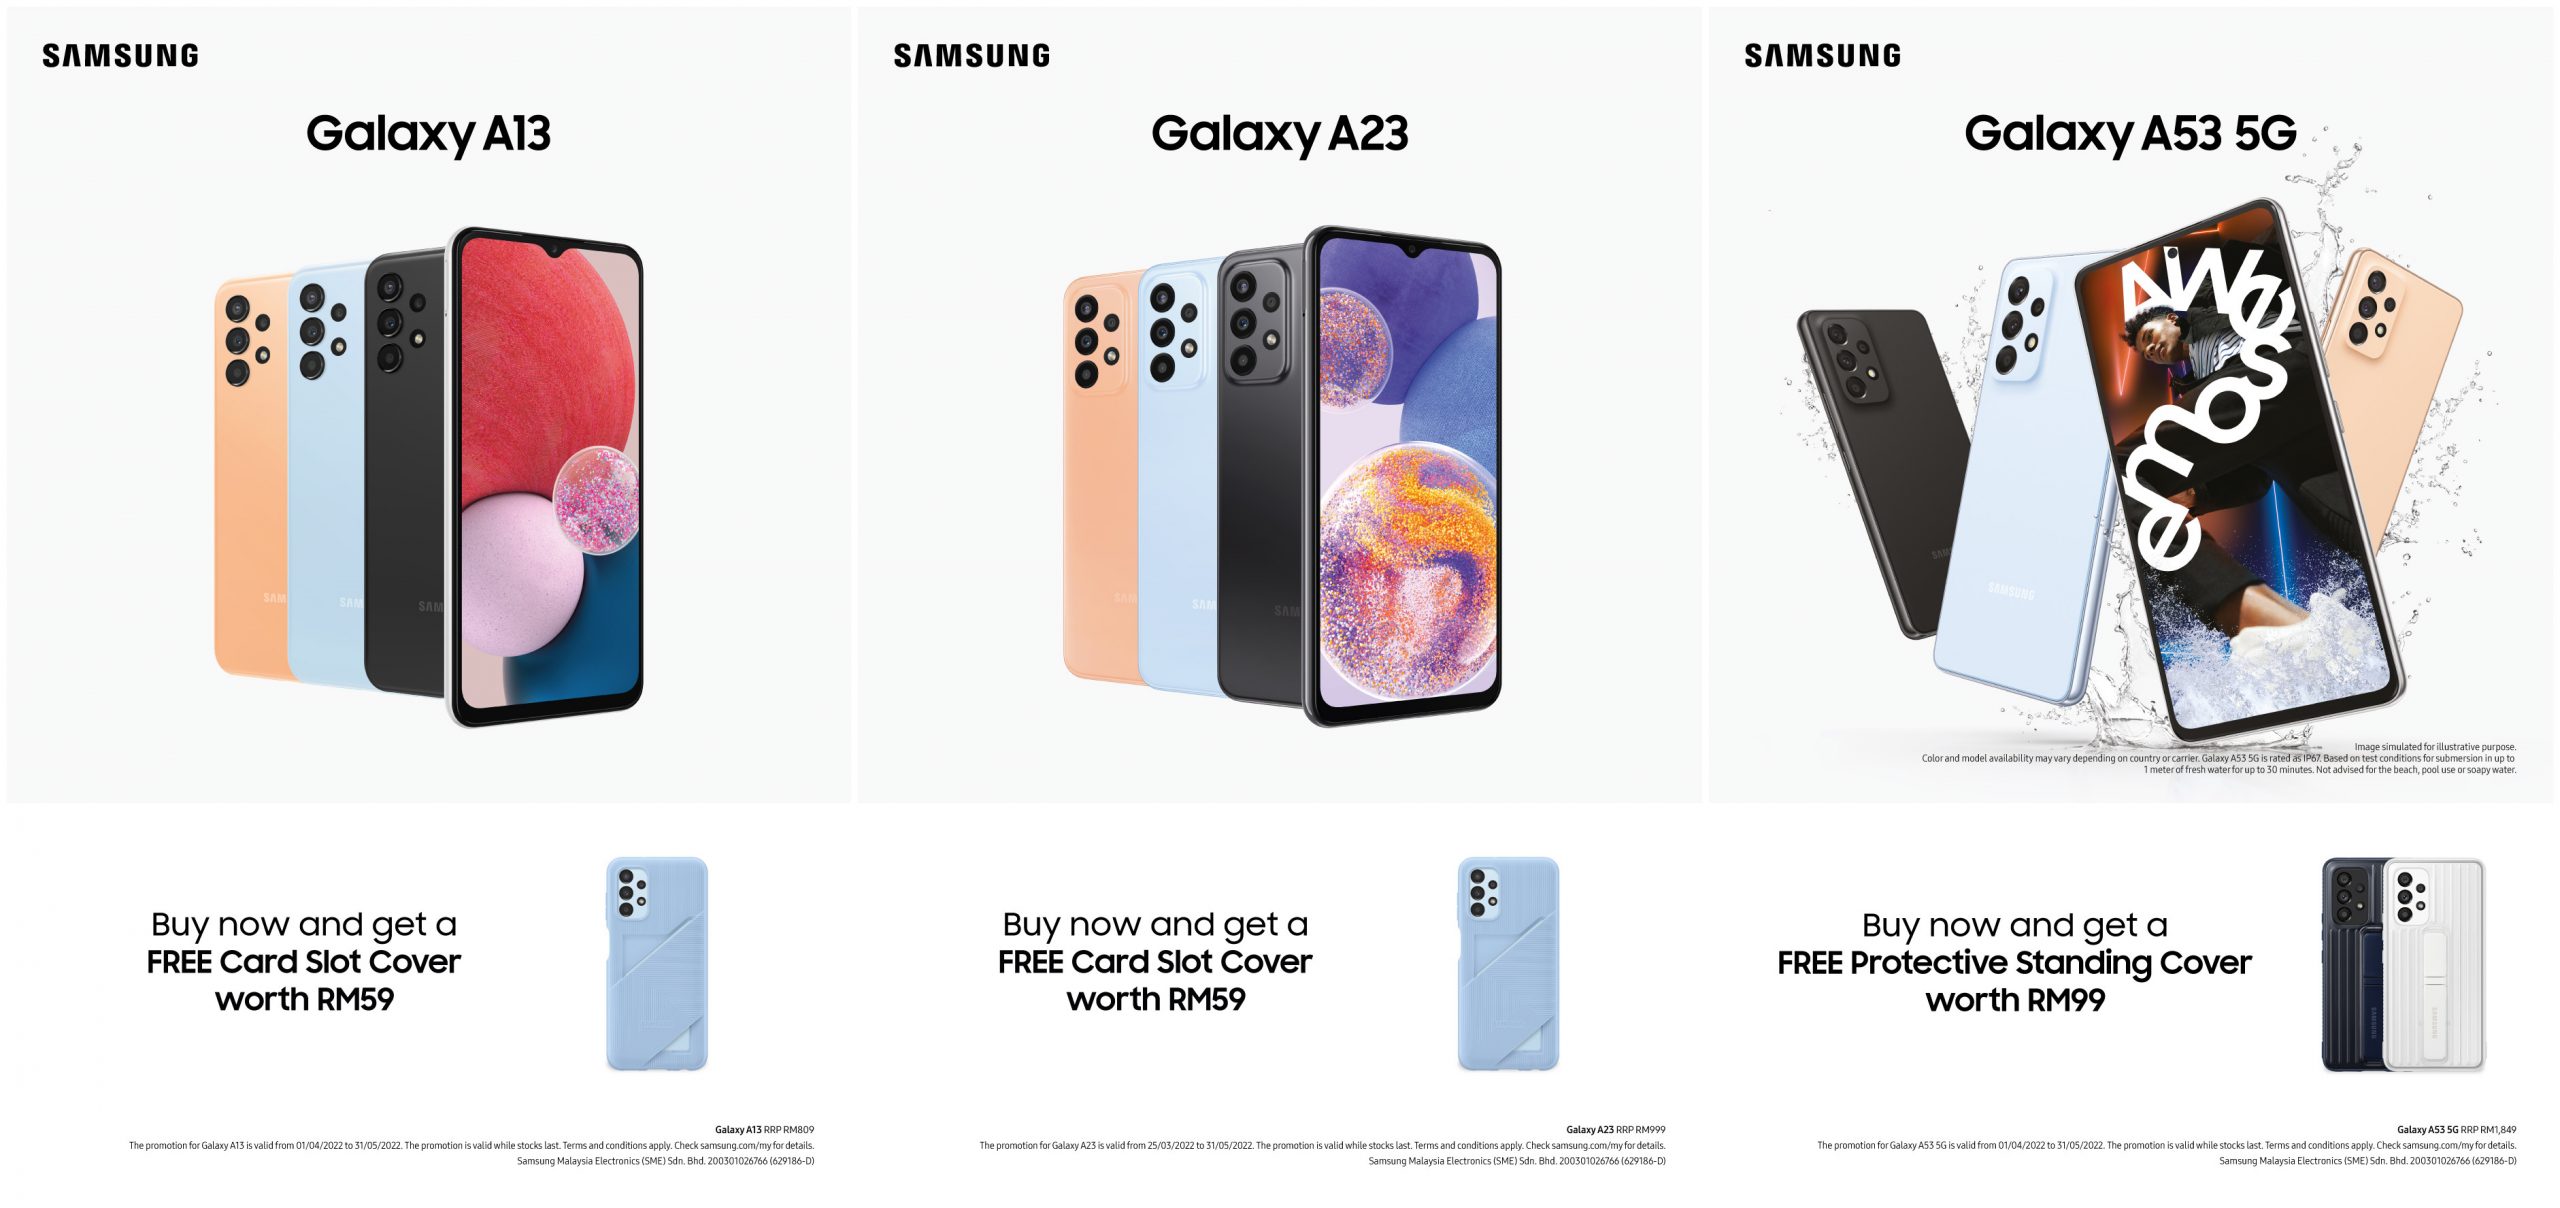 隨機附送贈品：Samsung Galaxy A53 5G、Galaxy A23 以及 Galaxy A13 即日起在馬來西亞發售！ 2